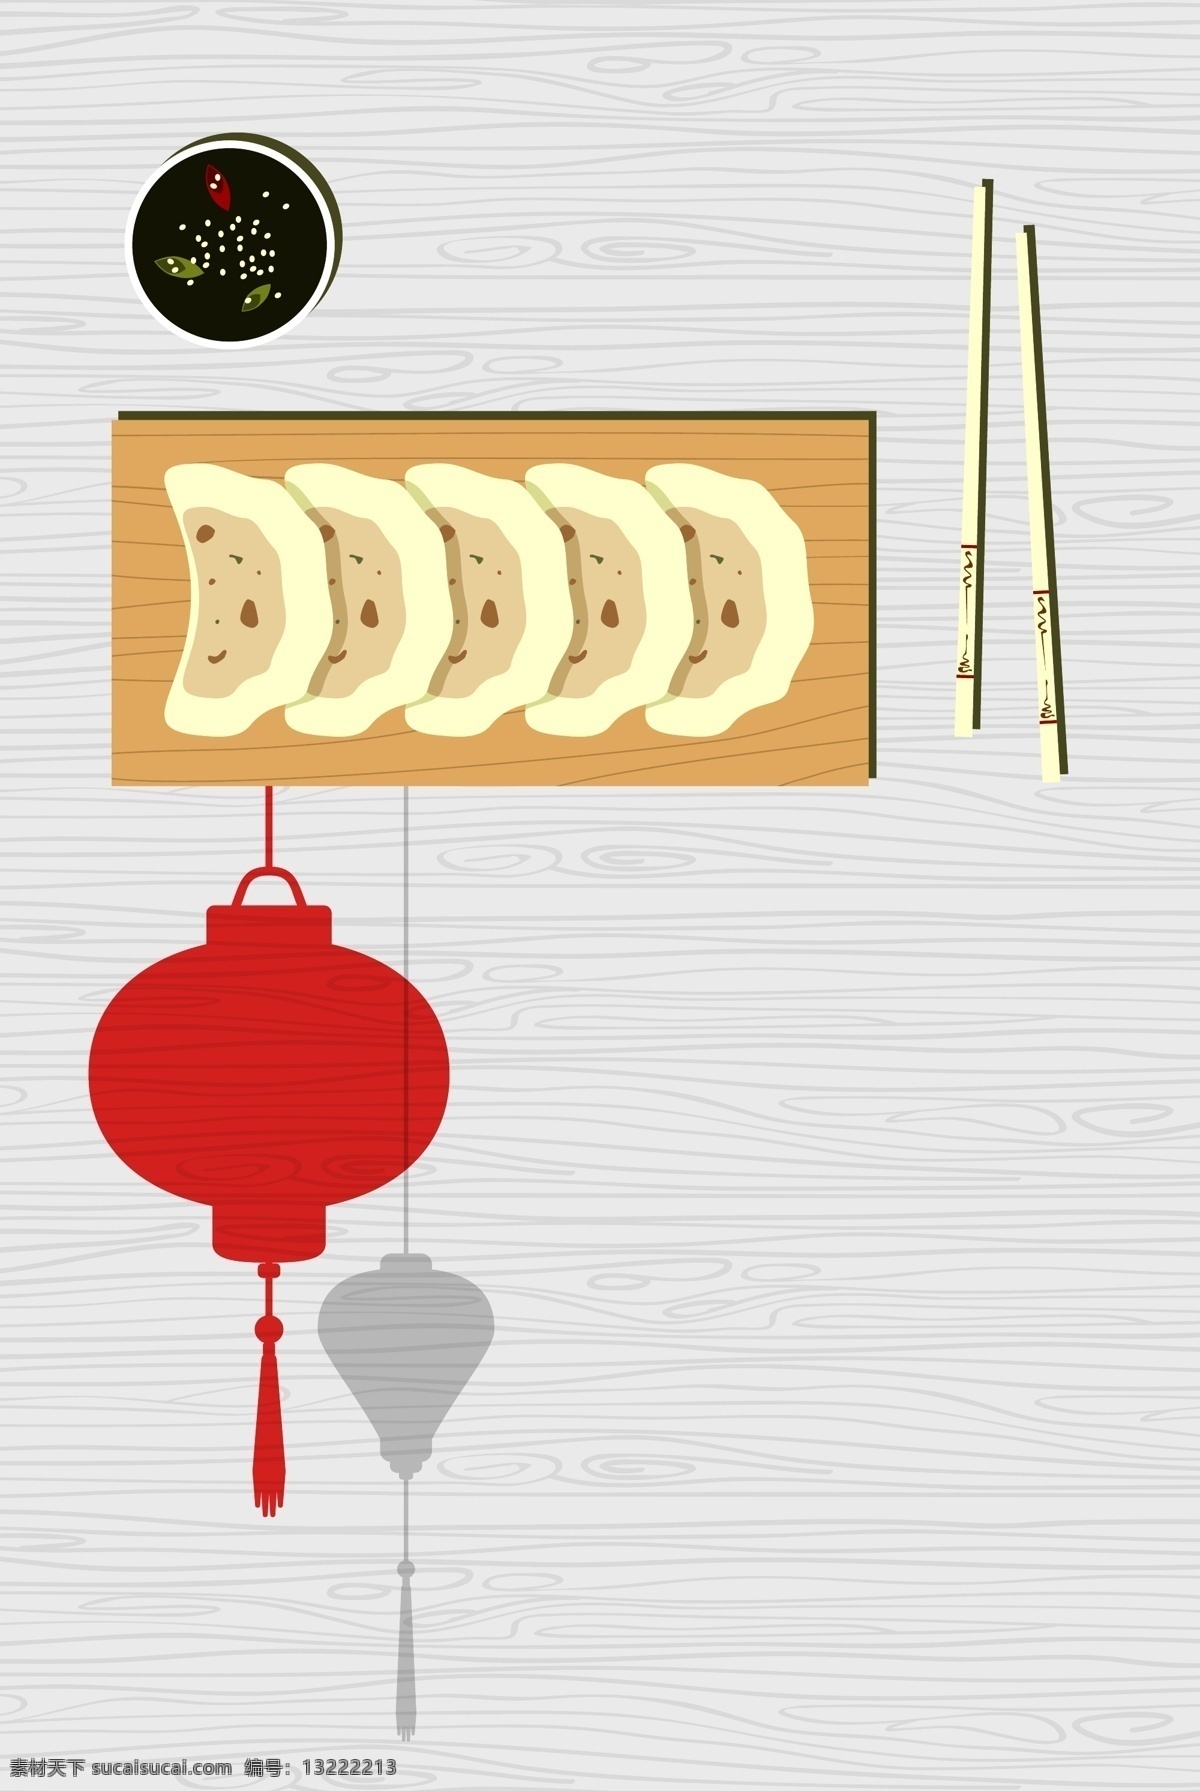 中华 美食 饺子 海报 背景 卡通海报 矢量素材 饺子海报 新年海报 餐馆海报 矢量饺子 美食矢量